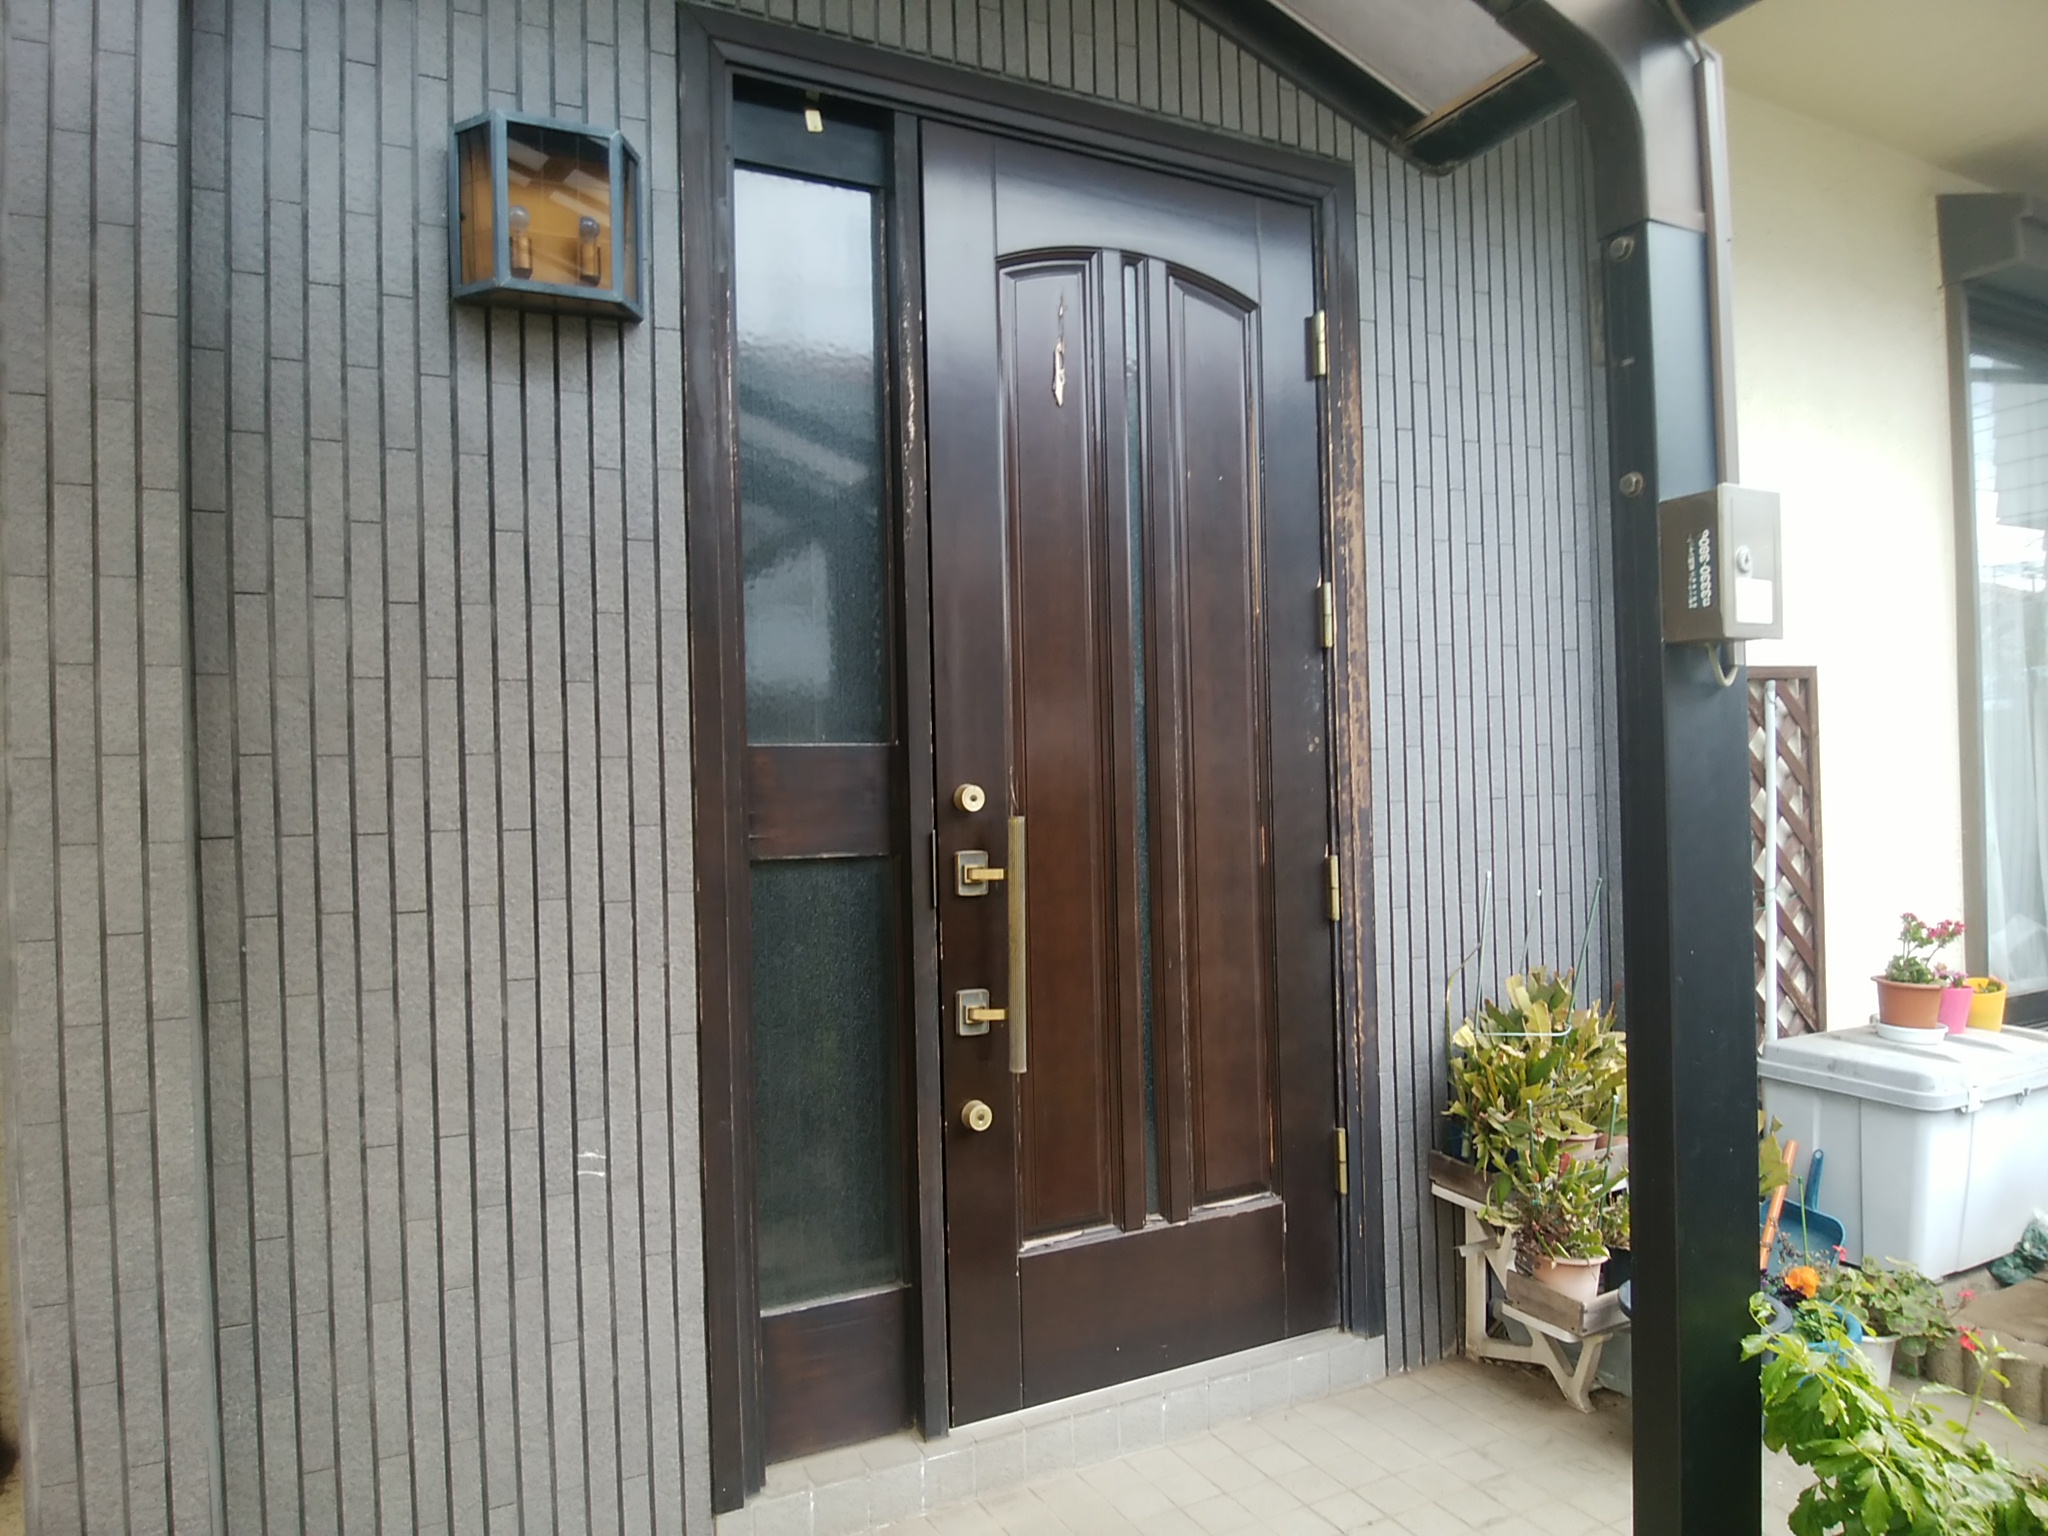 Lixilリシェントg41型 塗装がはがれてしまった玄関ドアを交換 東京都北区の工事事例 玄関ドアのリフォームなら玄関ドアマイスターへお任せください